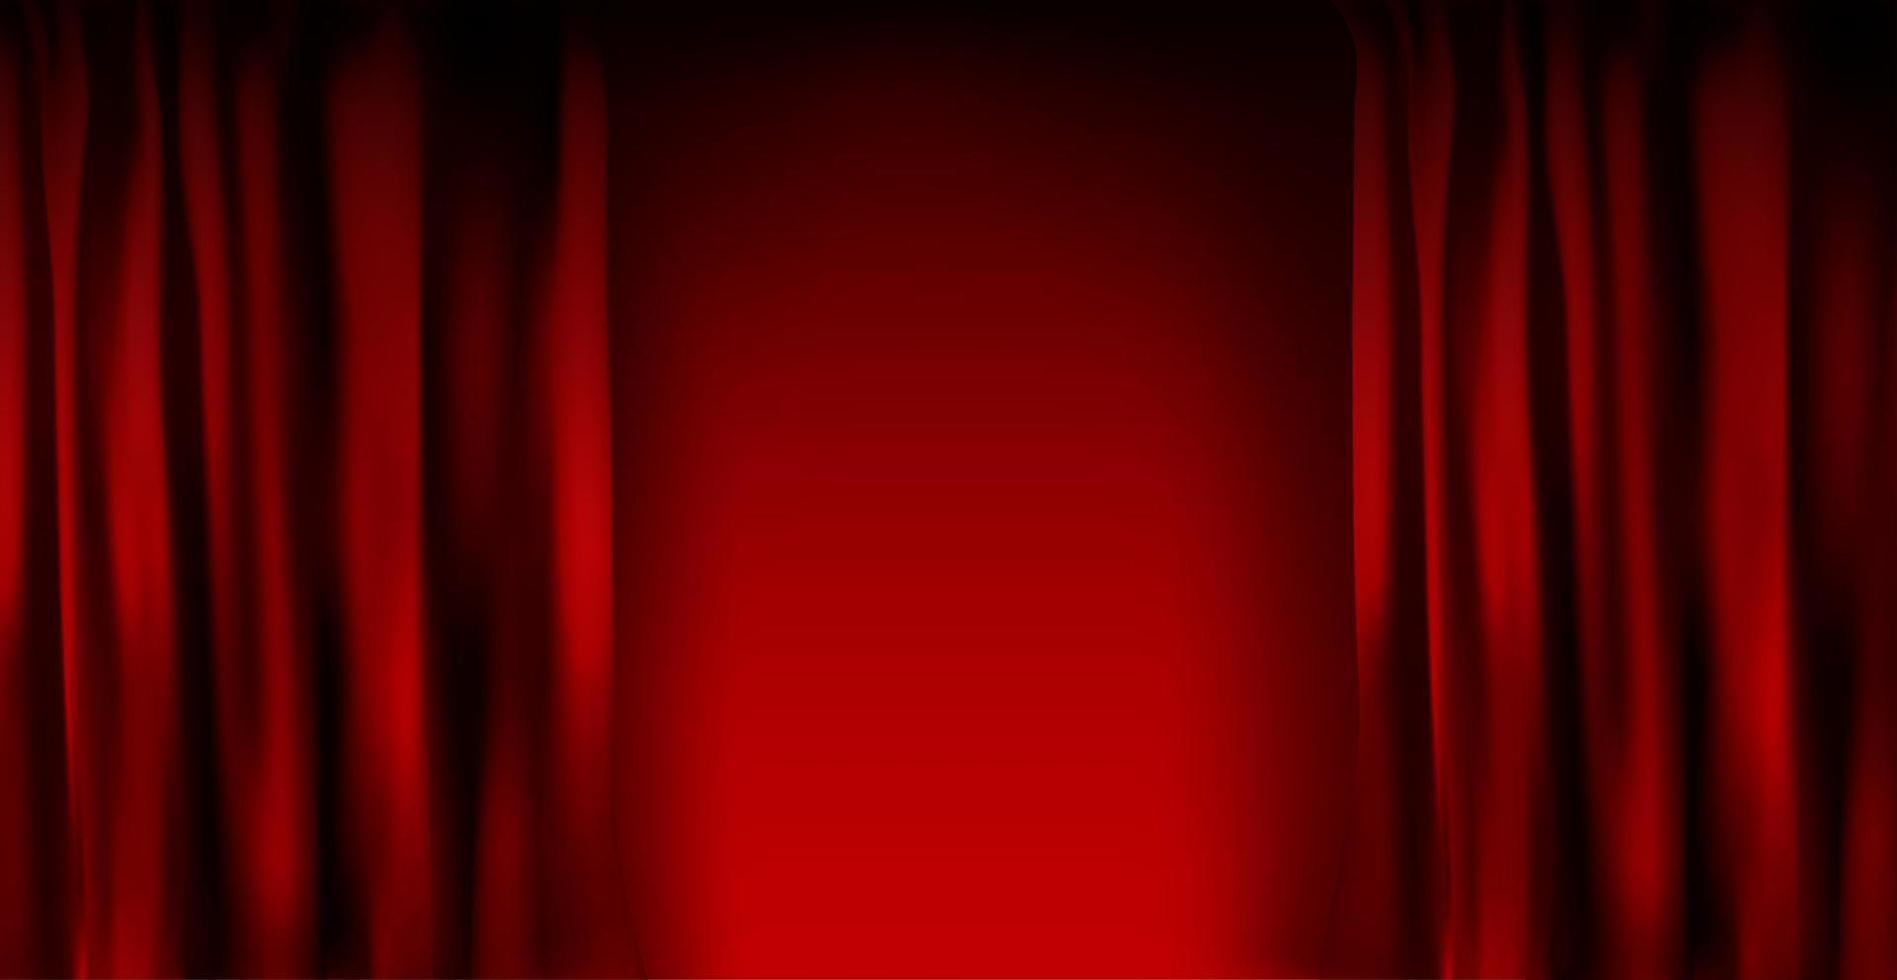 cortina de veludo vermelho colorido realista dobrada. cortina de opção em casa no cinema. ilustração vetorial. vetor